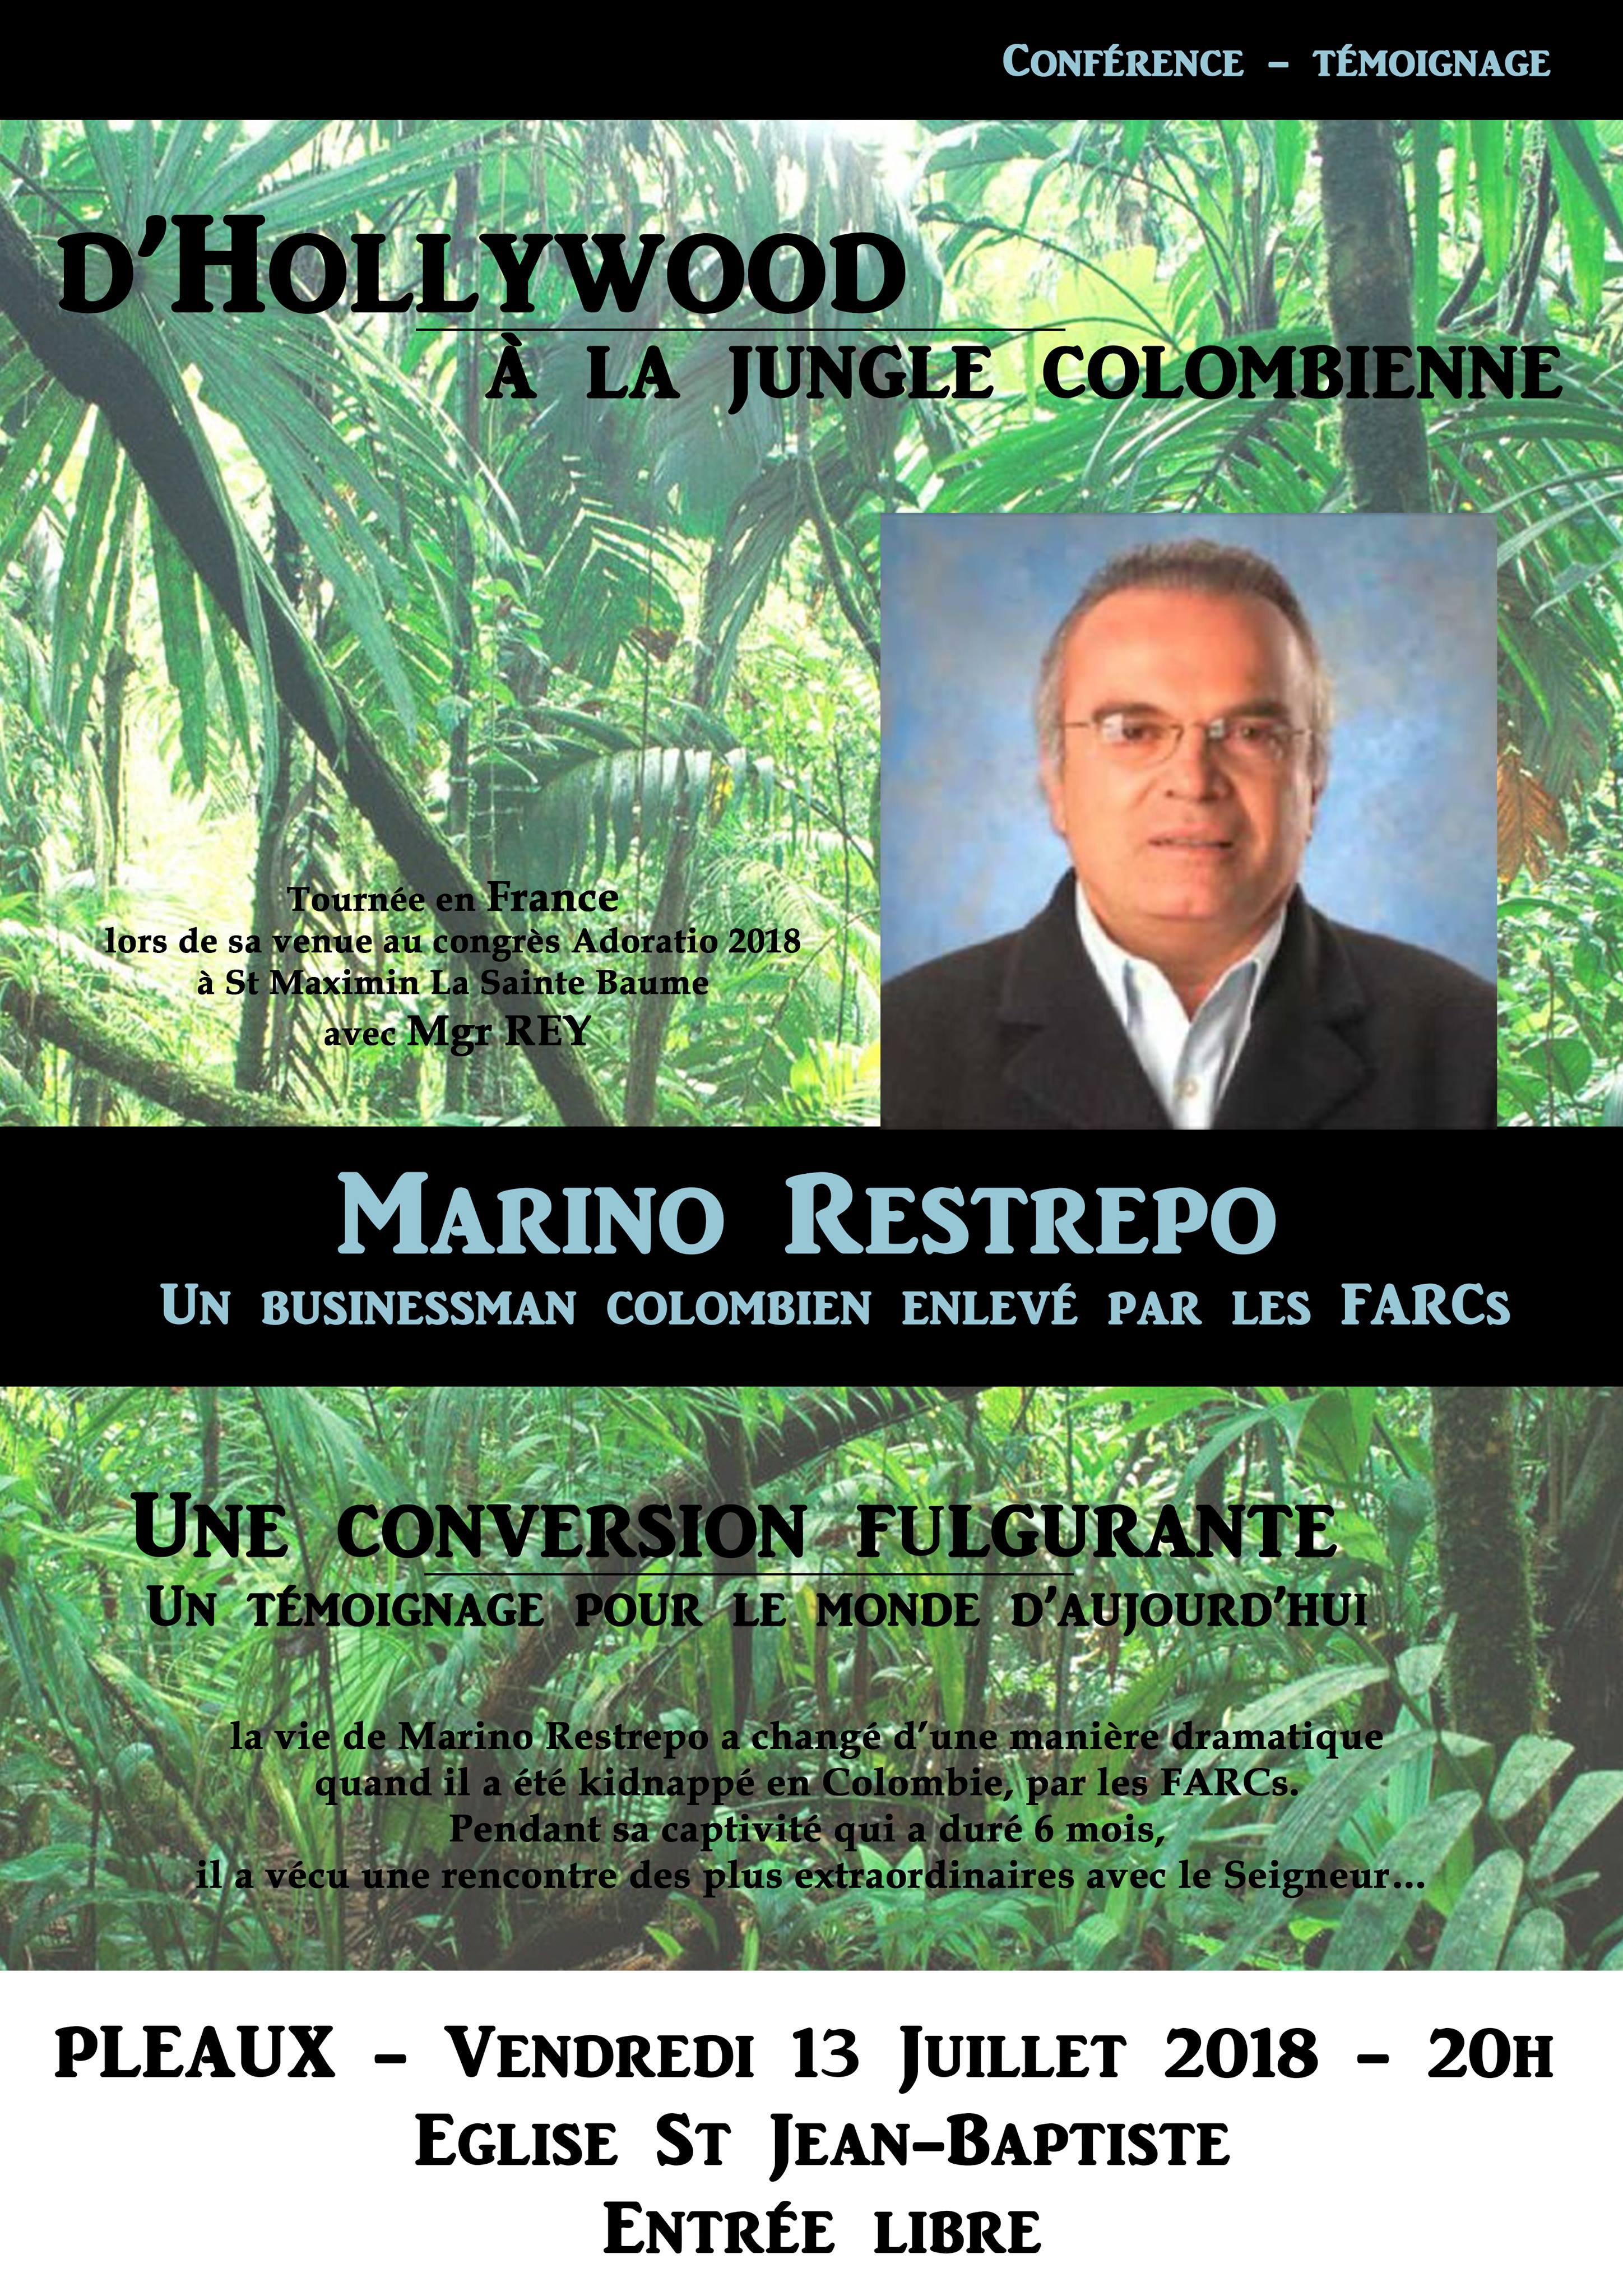 D’Hollywood à la jungle colombienne – Témoignage de Marino Restrepo le 13 juillet 2018 à Pleaux (15)